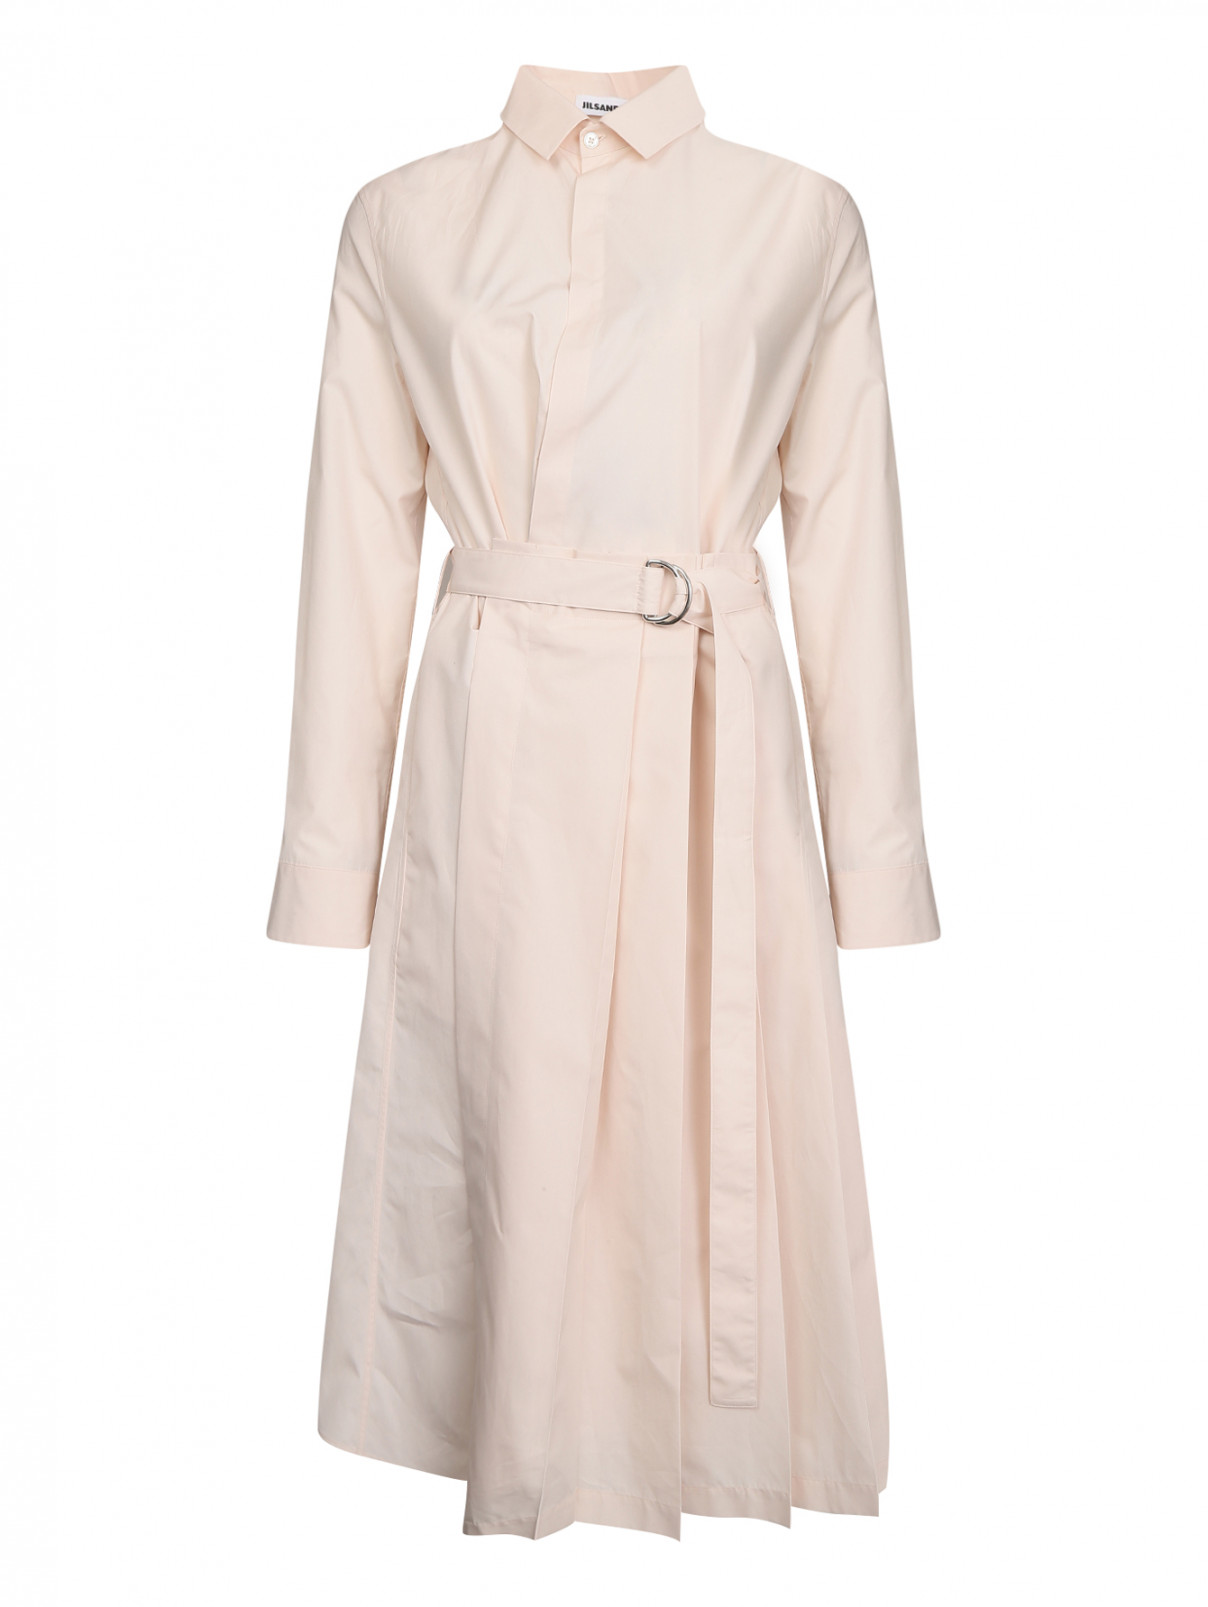 Платье из хлопка с юбкой в складку Jil Sander  –  Общий вид  – Цвет:  Розовый